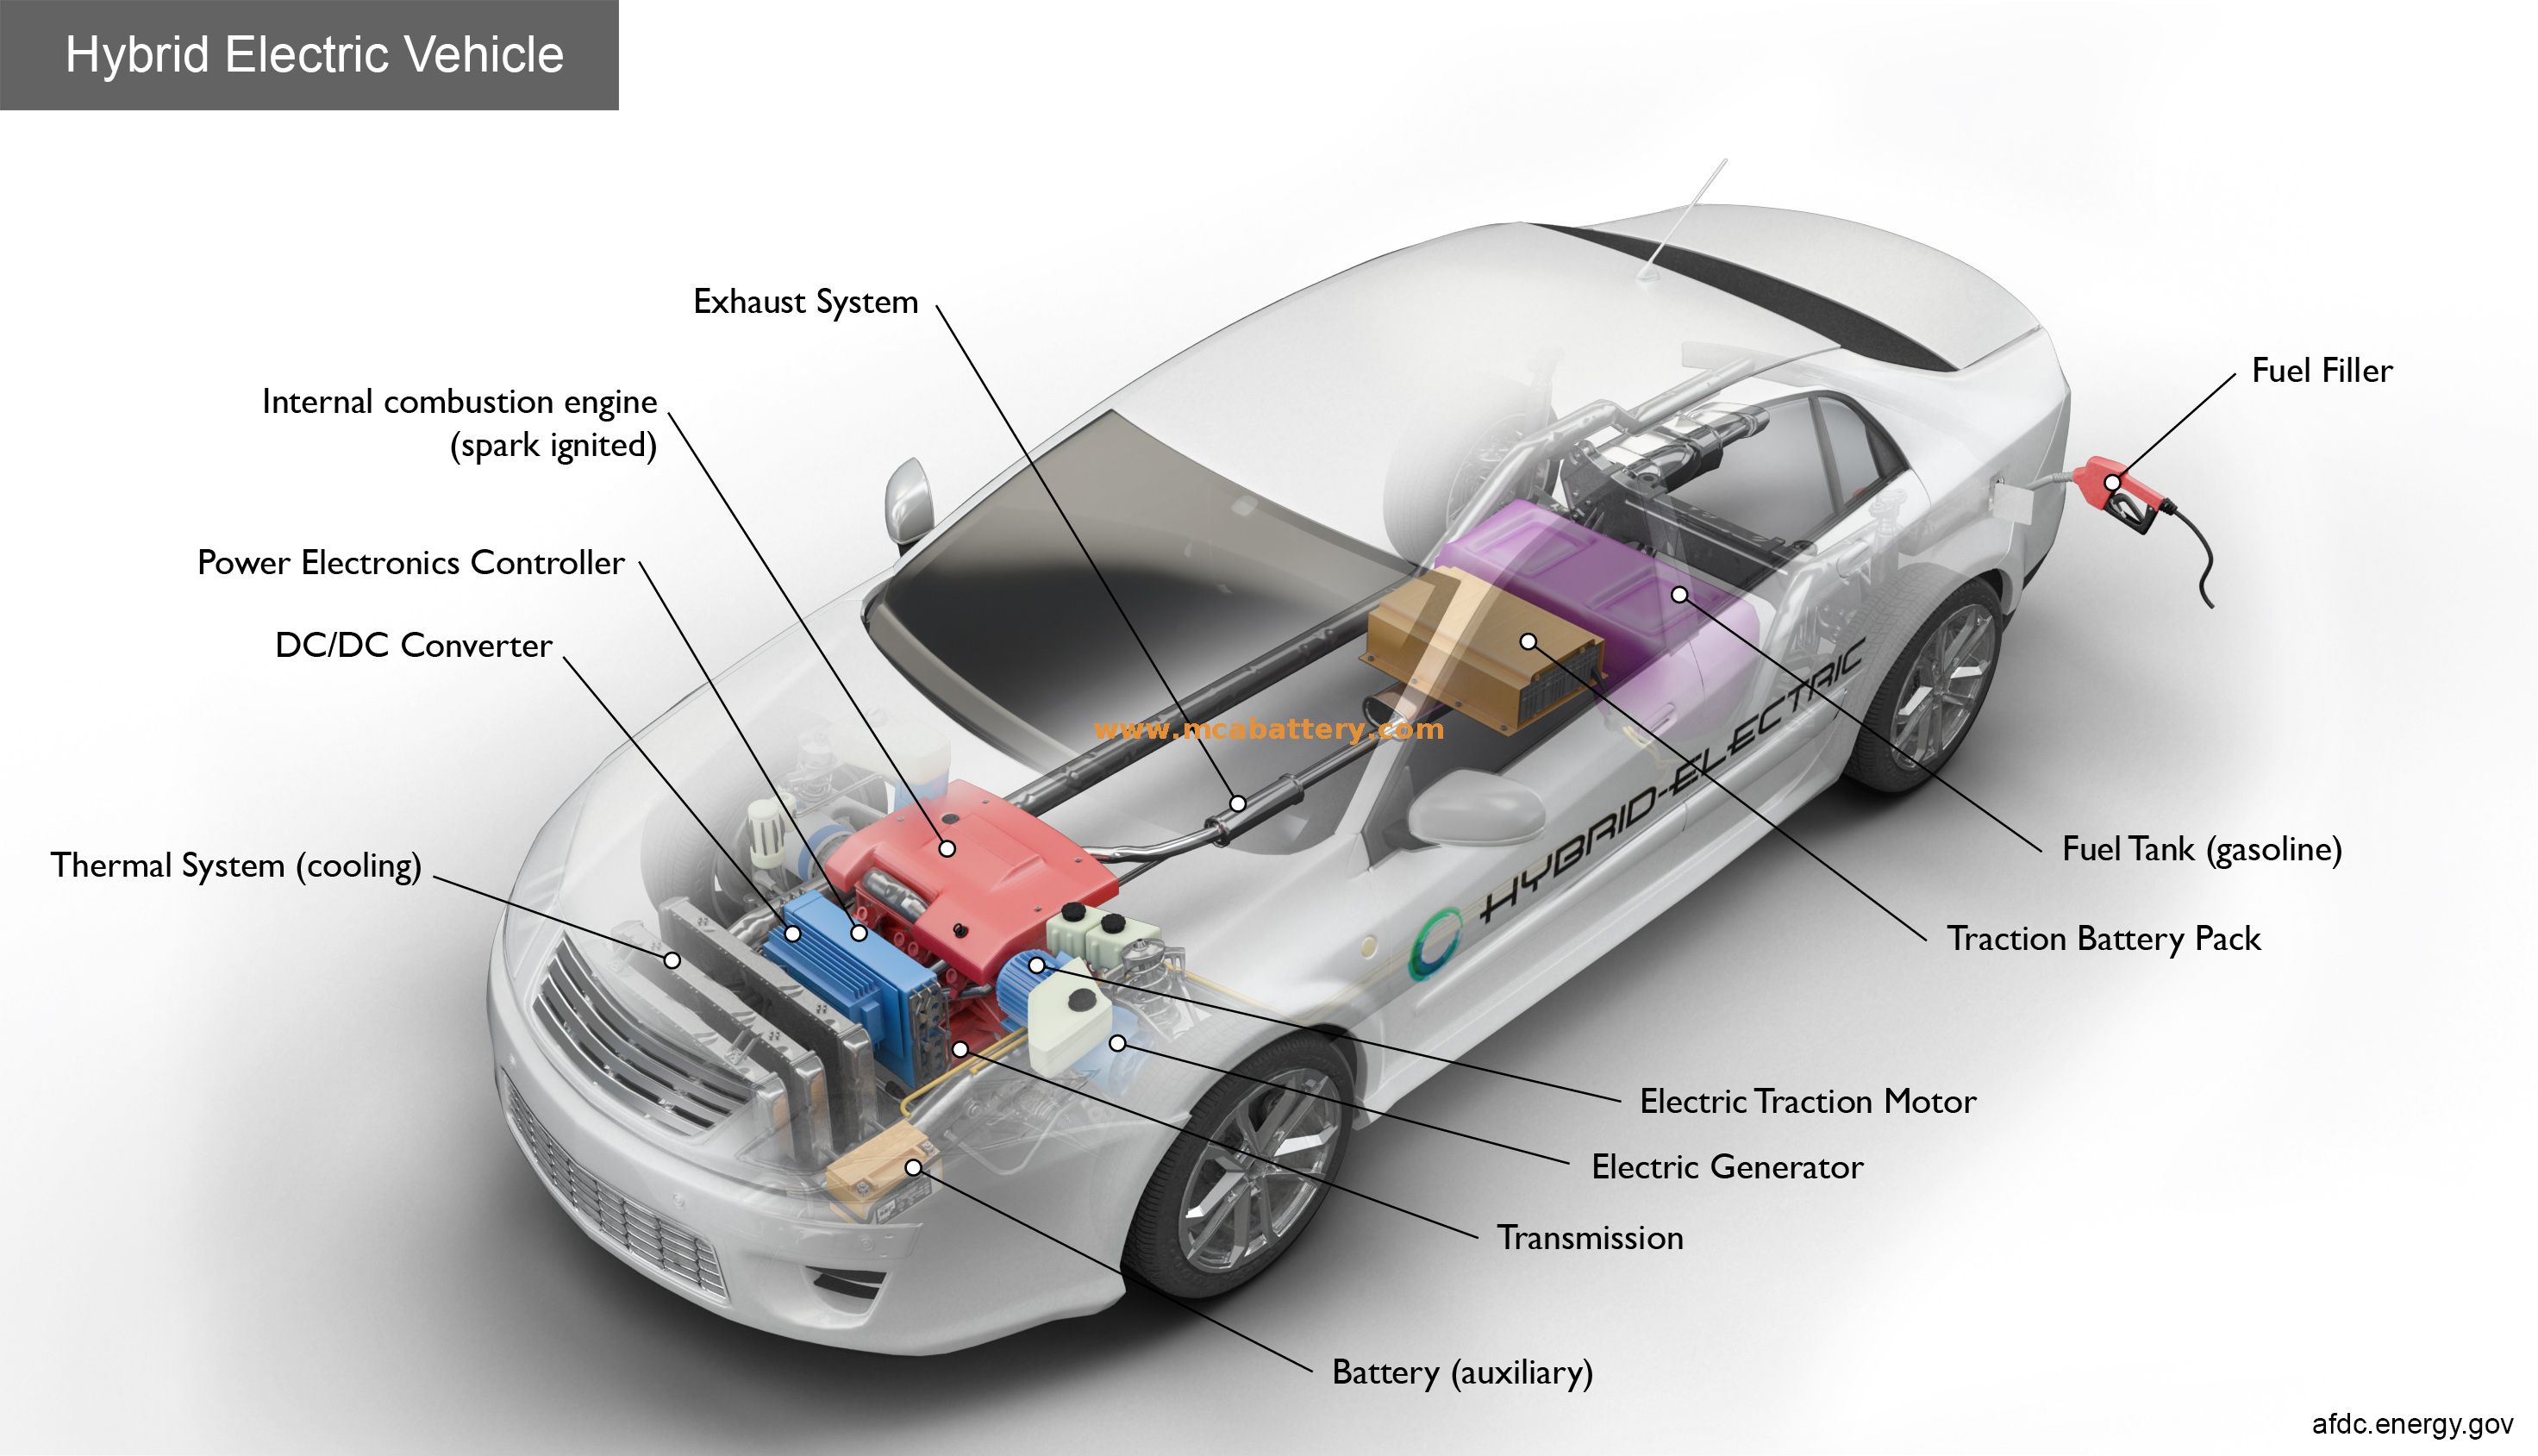 Start-Stopp 12V Agm Start-Stopp-Batterie für Fahrzeug